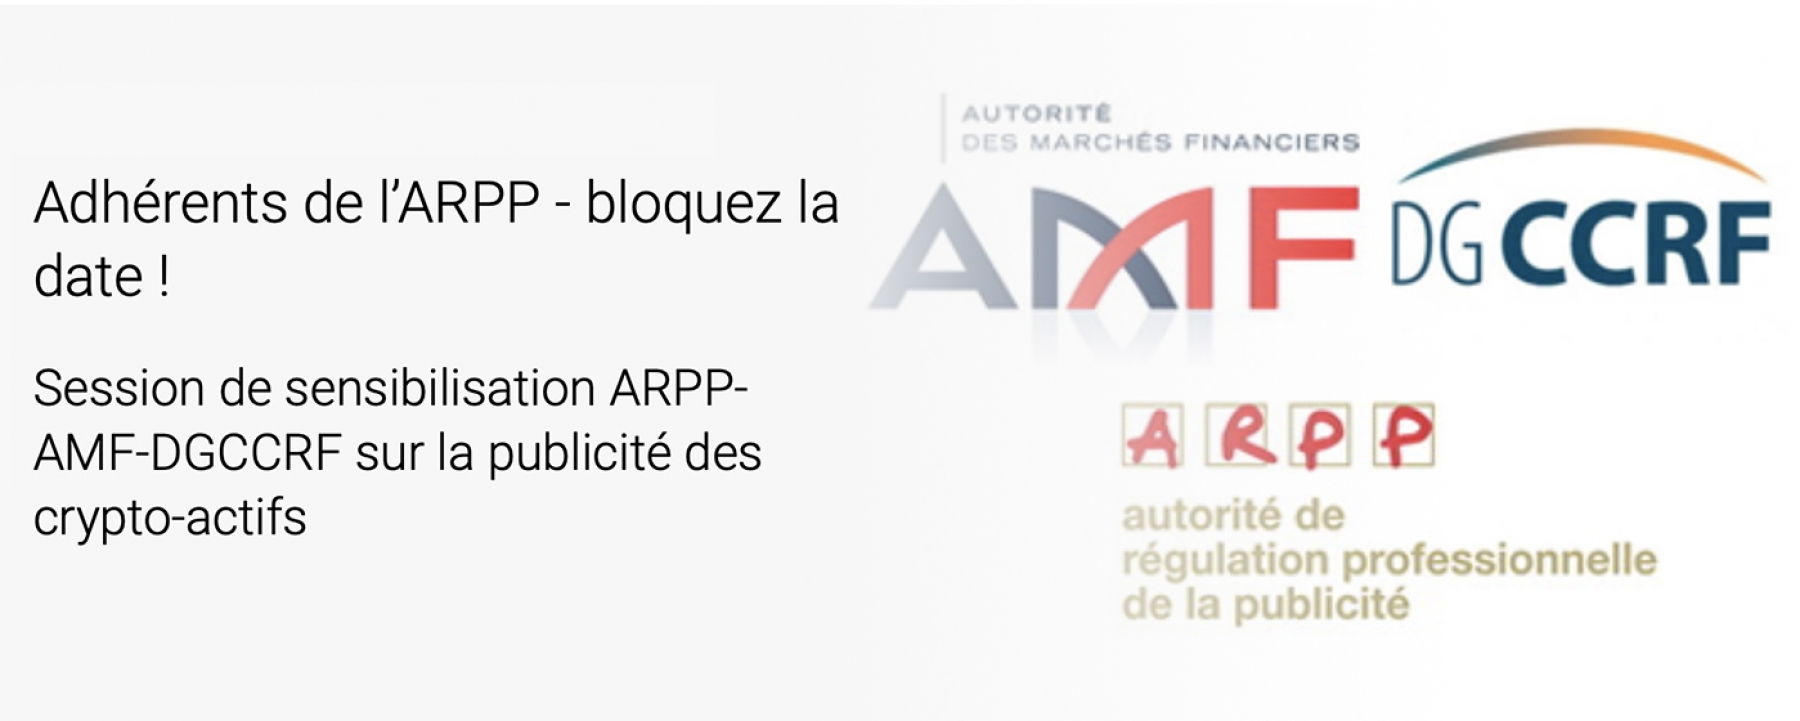 Session de sensibilisation ARPP-AMF-DGCCRF sur la publicité des crypto-actifs, par l'ARPP le 6 mai 2021